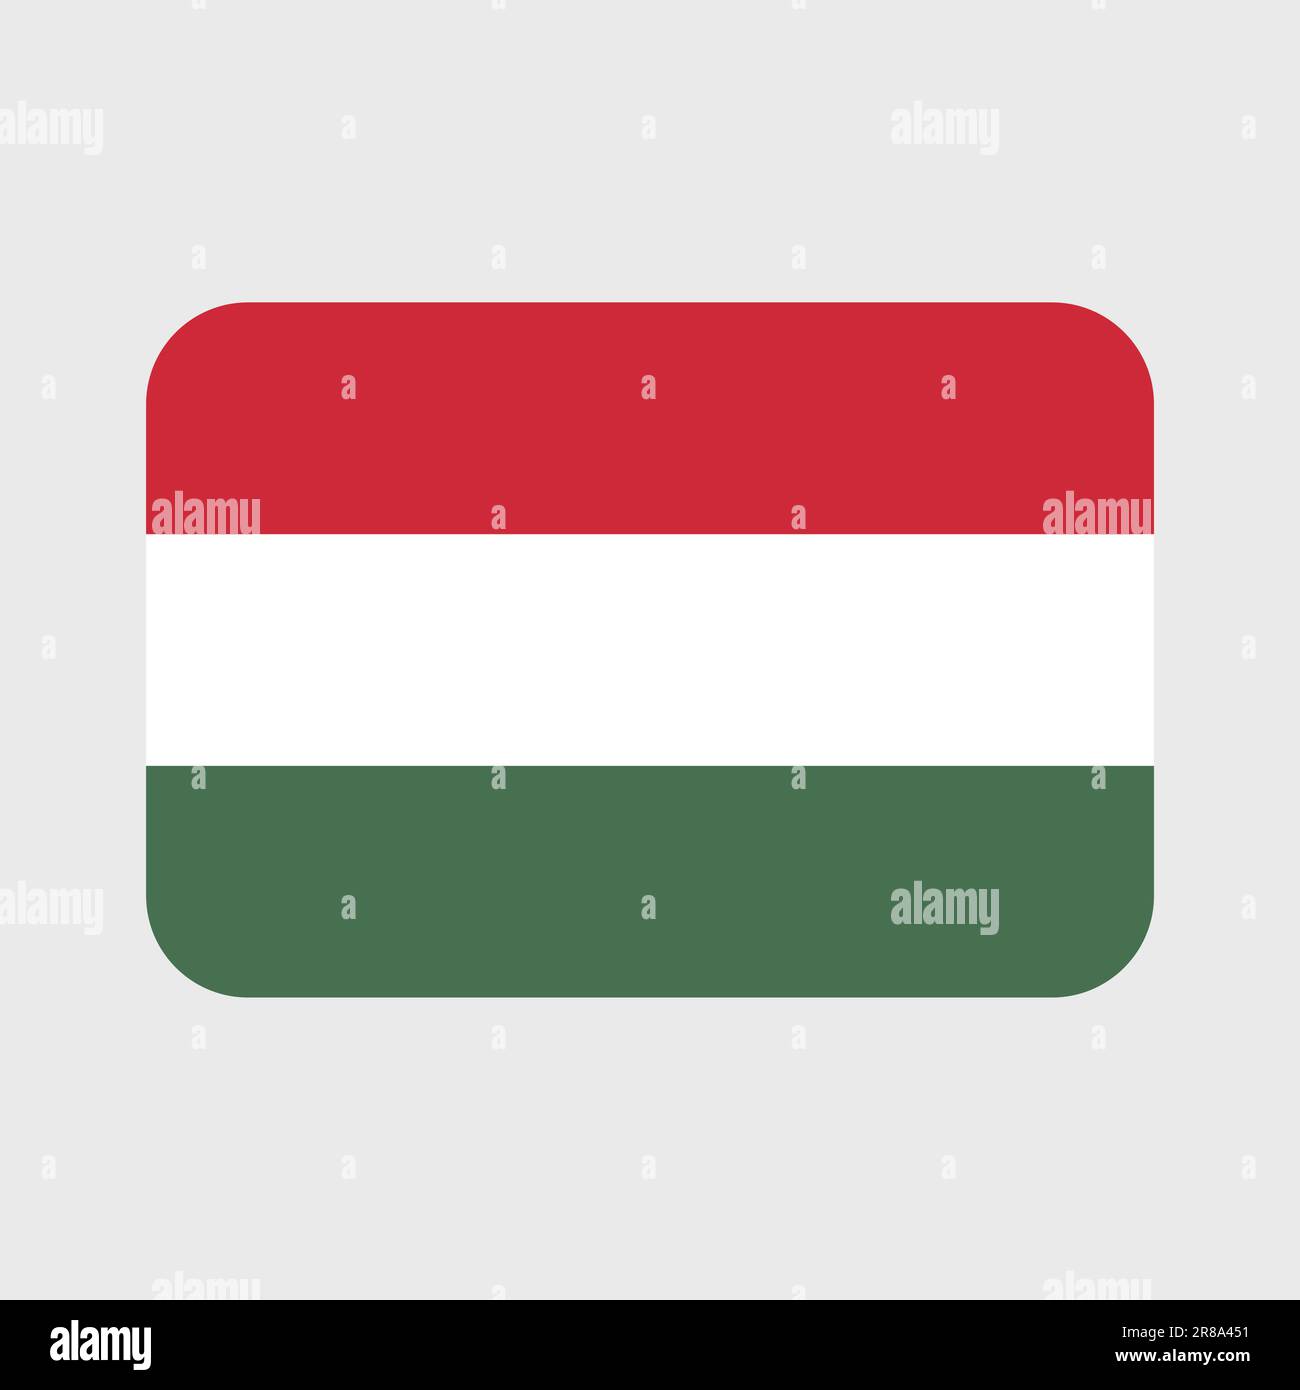 Icone vettoriali per bandiere ungheresi insieme di illustrazioni a forma di cuore, stella, cerchio e mappa. Illustrazione Vettoriale